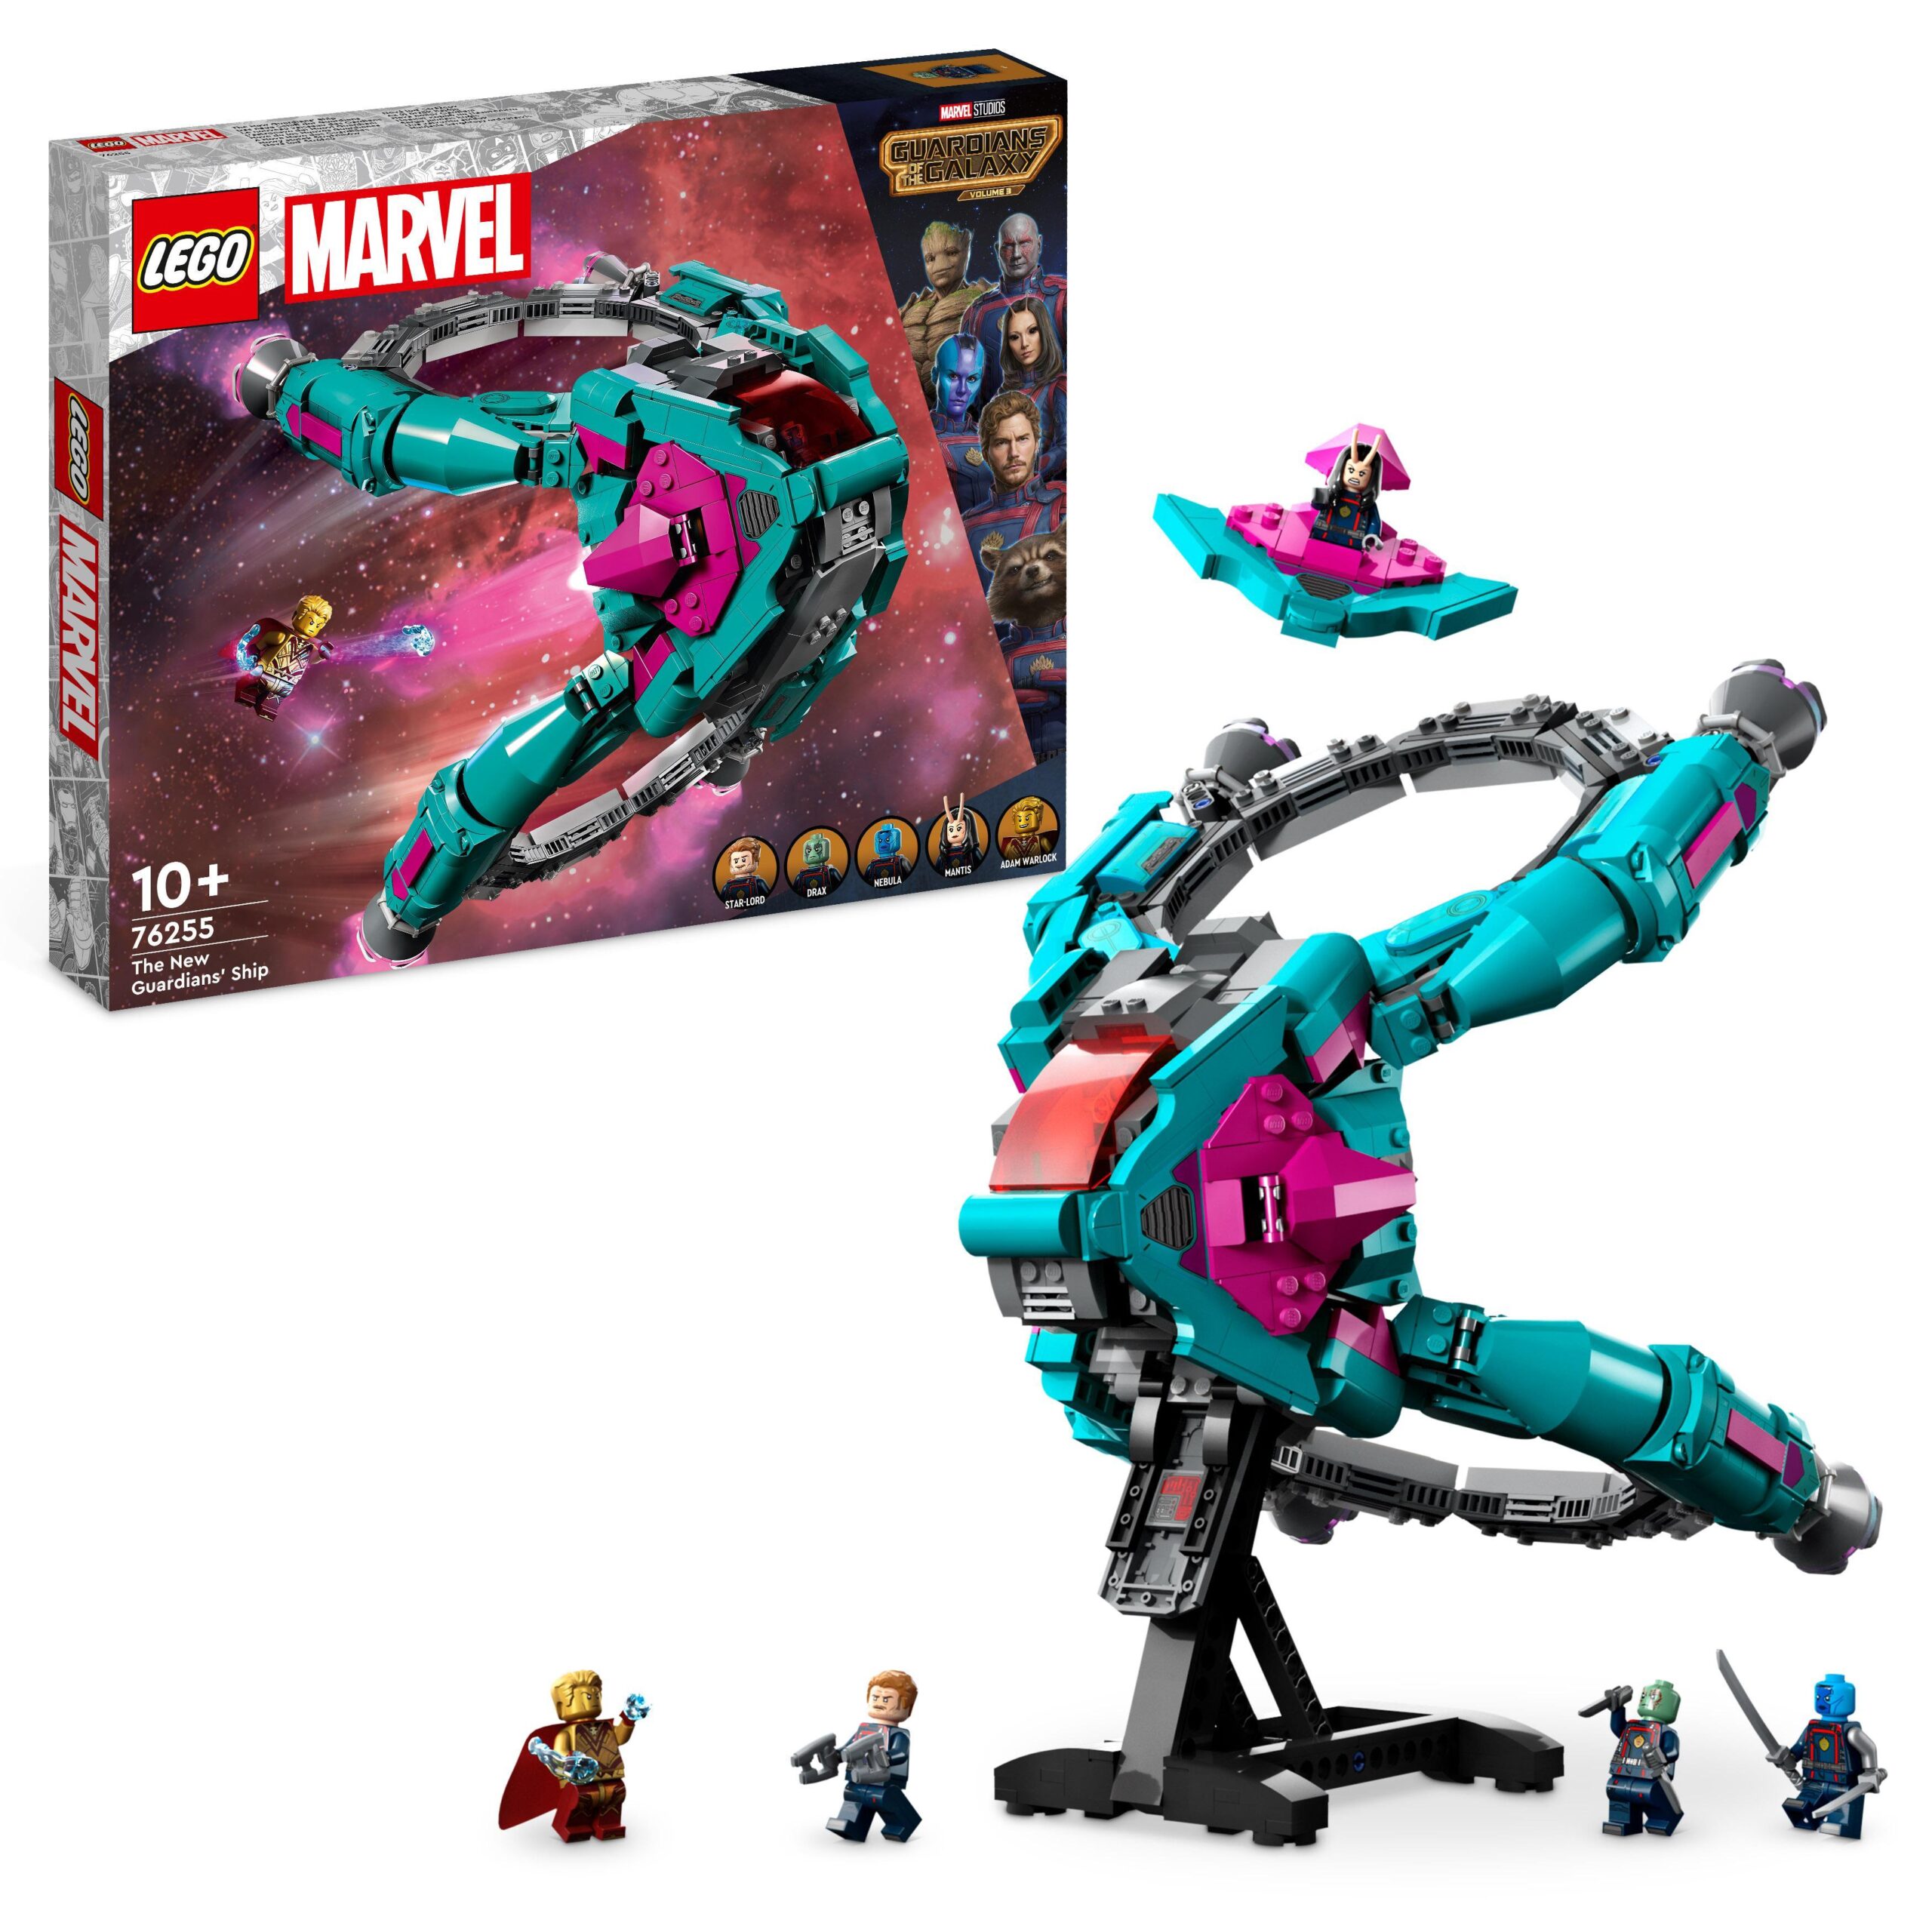 Lego marvel 76255 l’astronave dei nuovi guardiani, giocattolo da costruire dei guardiani della galassia volume 3 con minifigure - LEGO SUPER HEROES